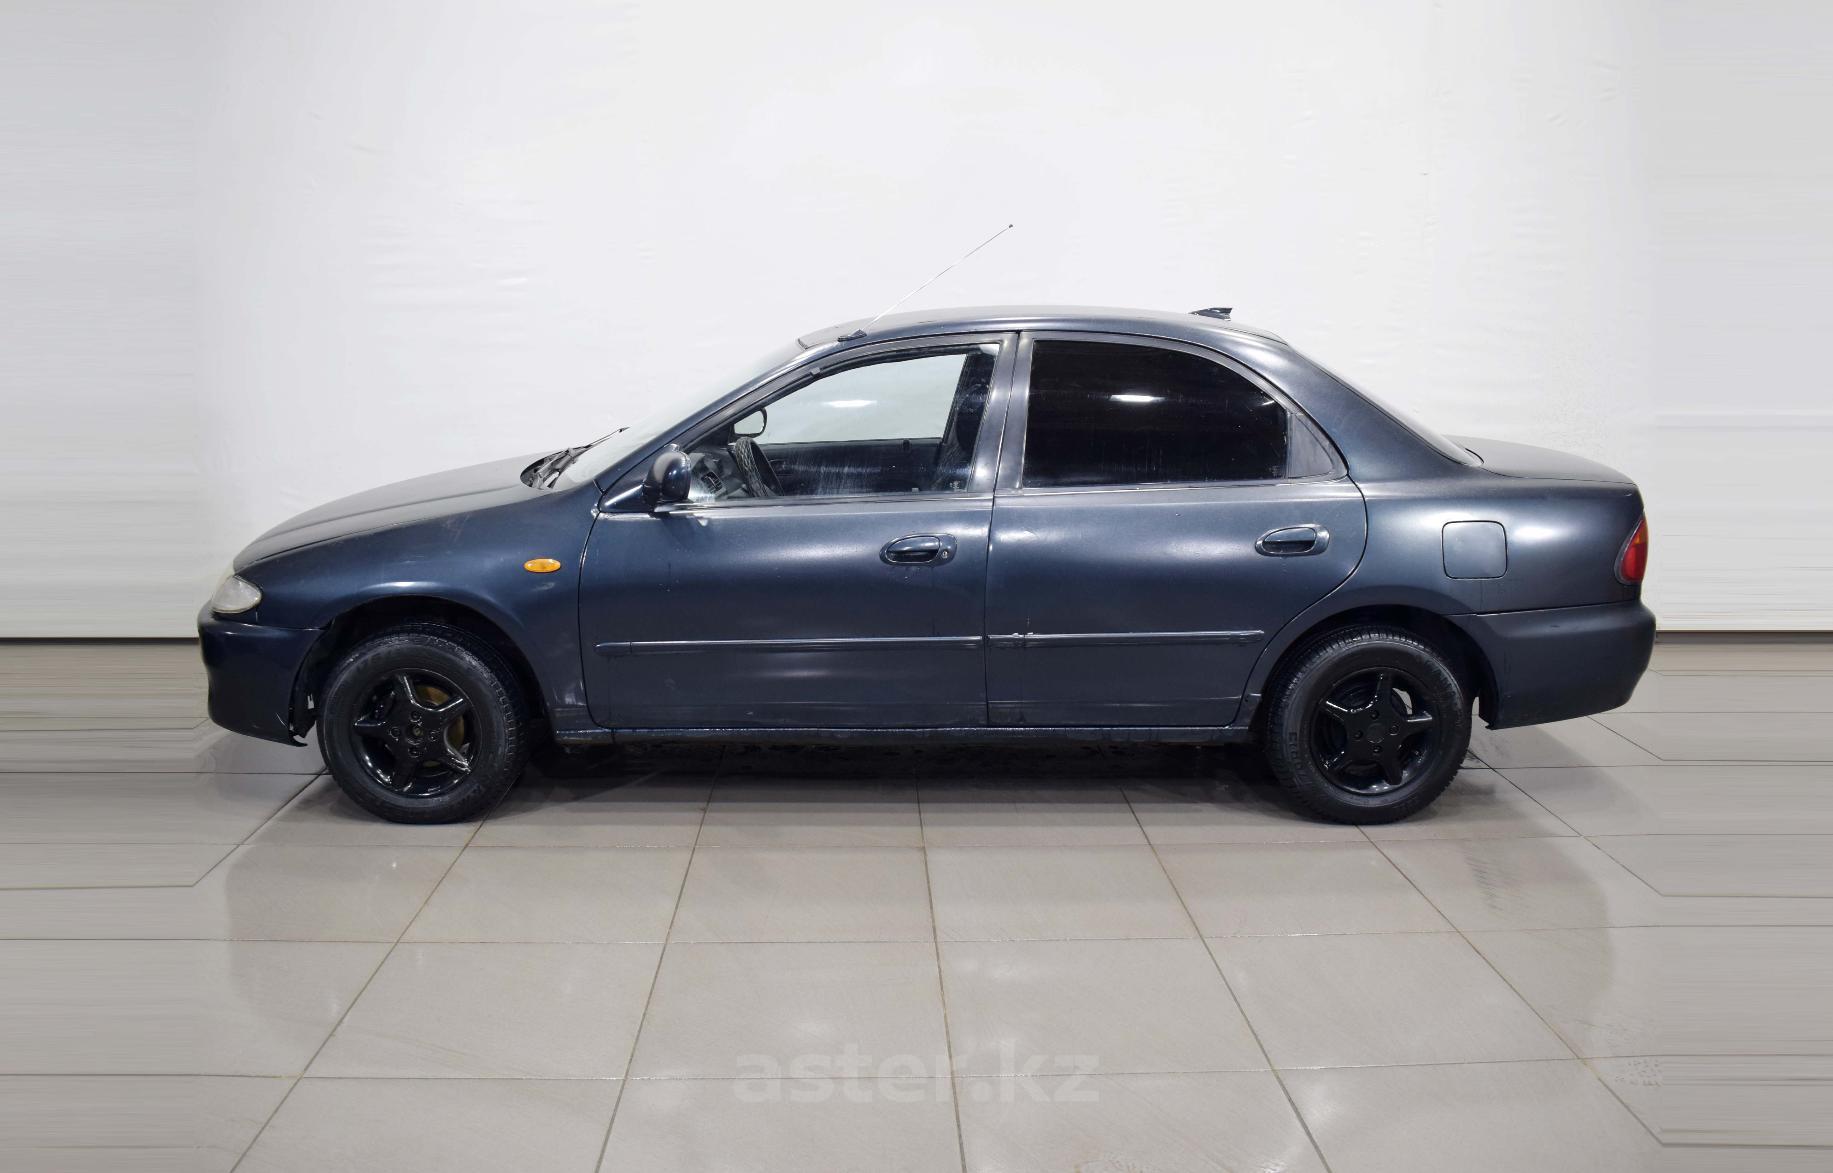 Купить Mazda 323 1995 года в Шымкент, цена 690 000тг, №86132. Продажа ...